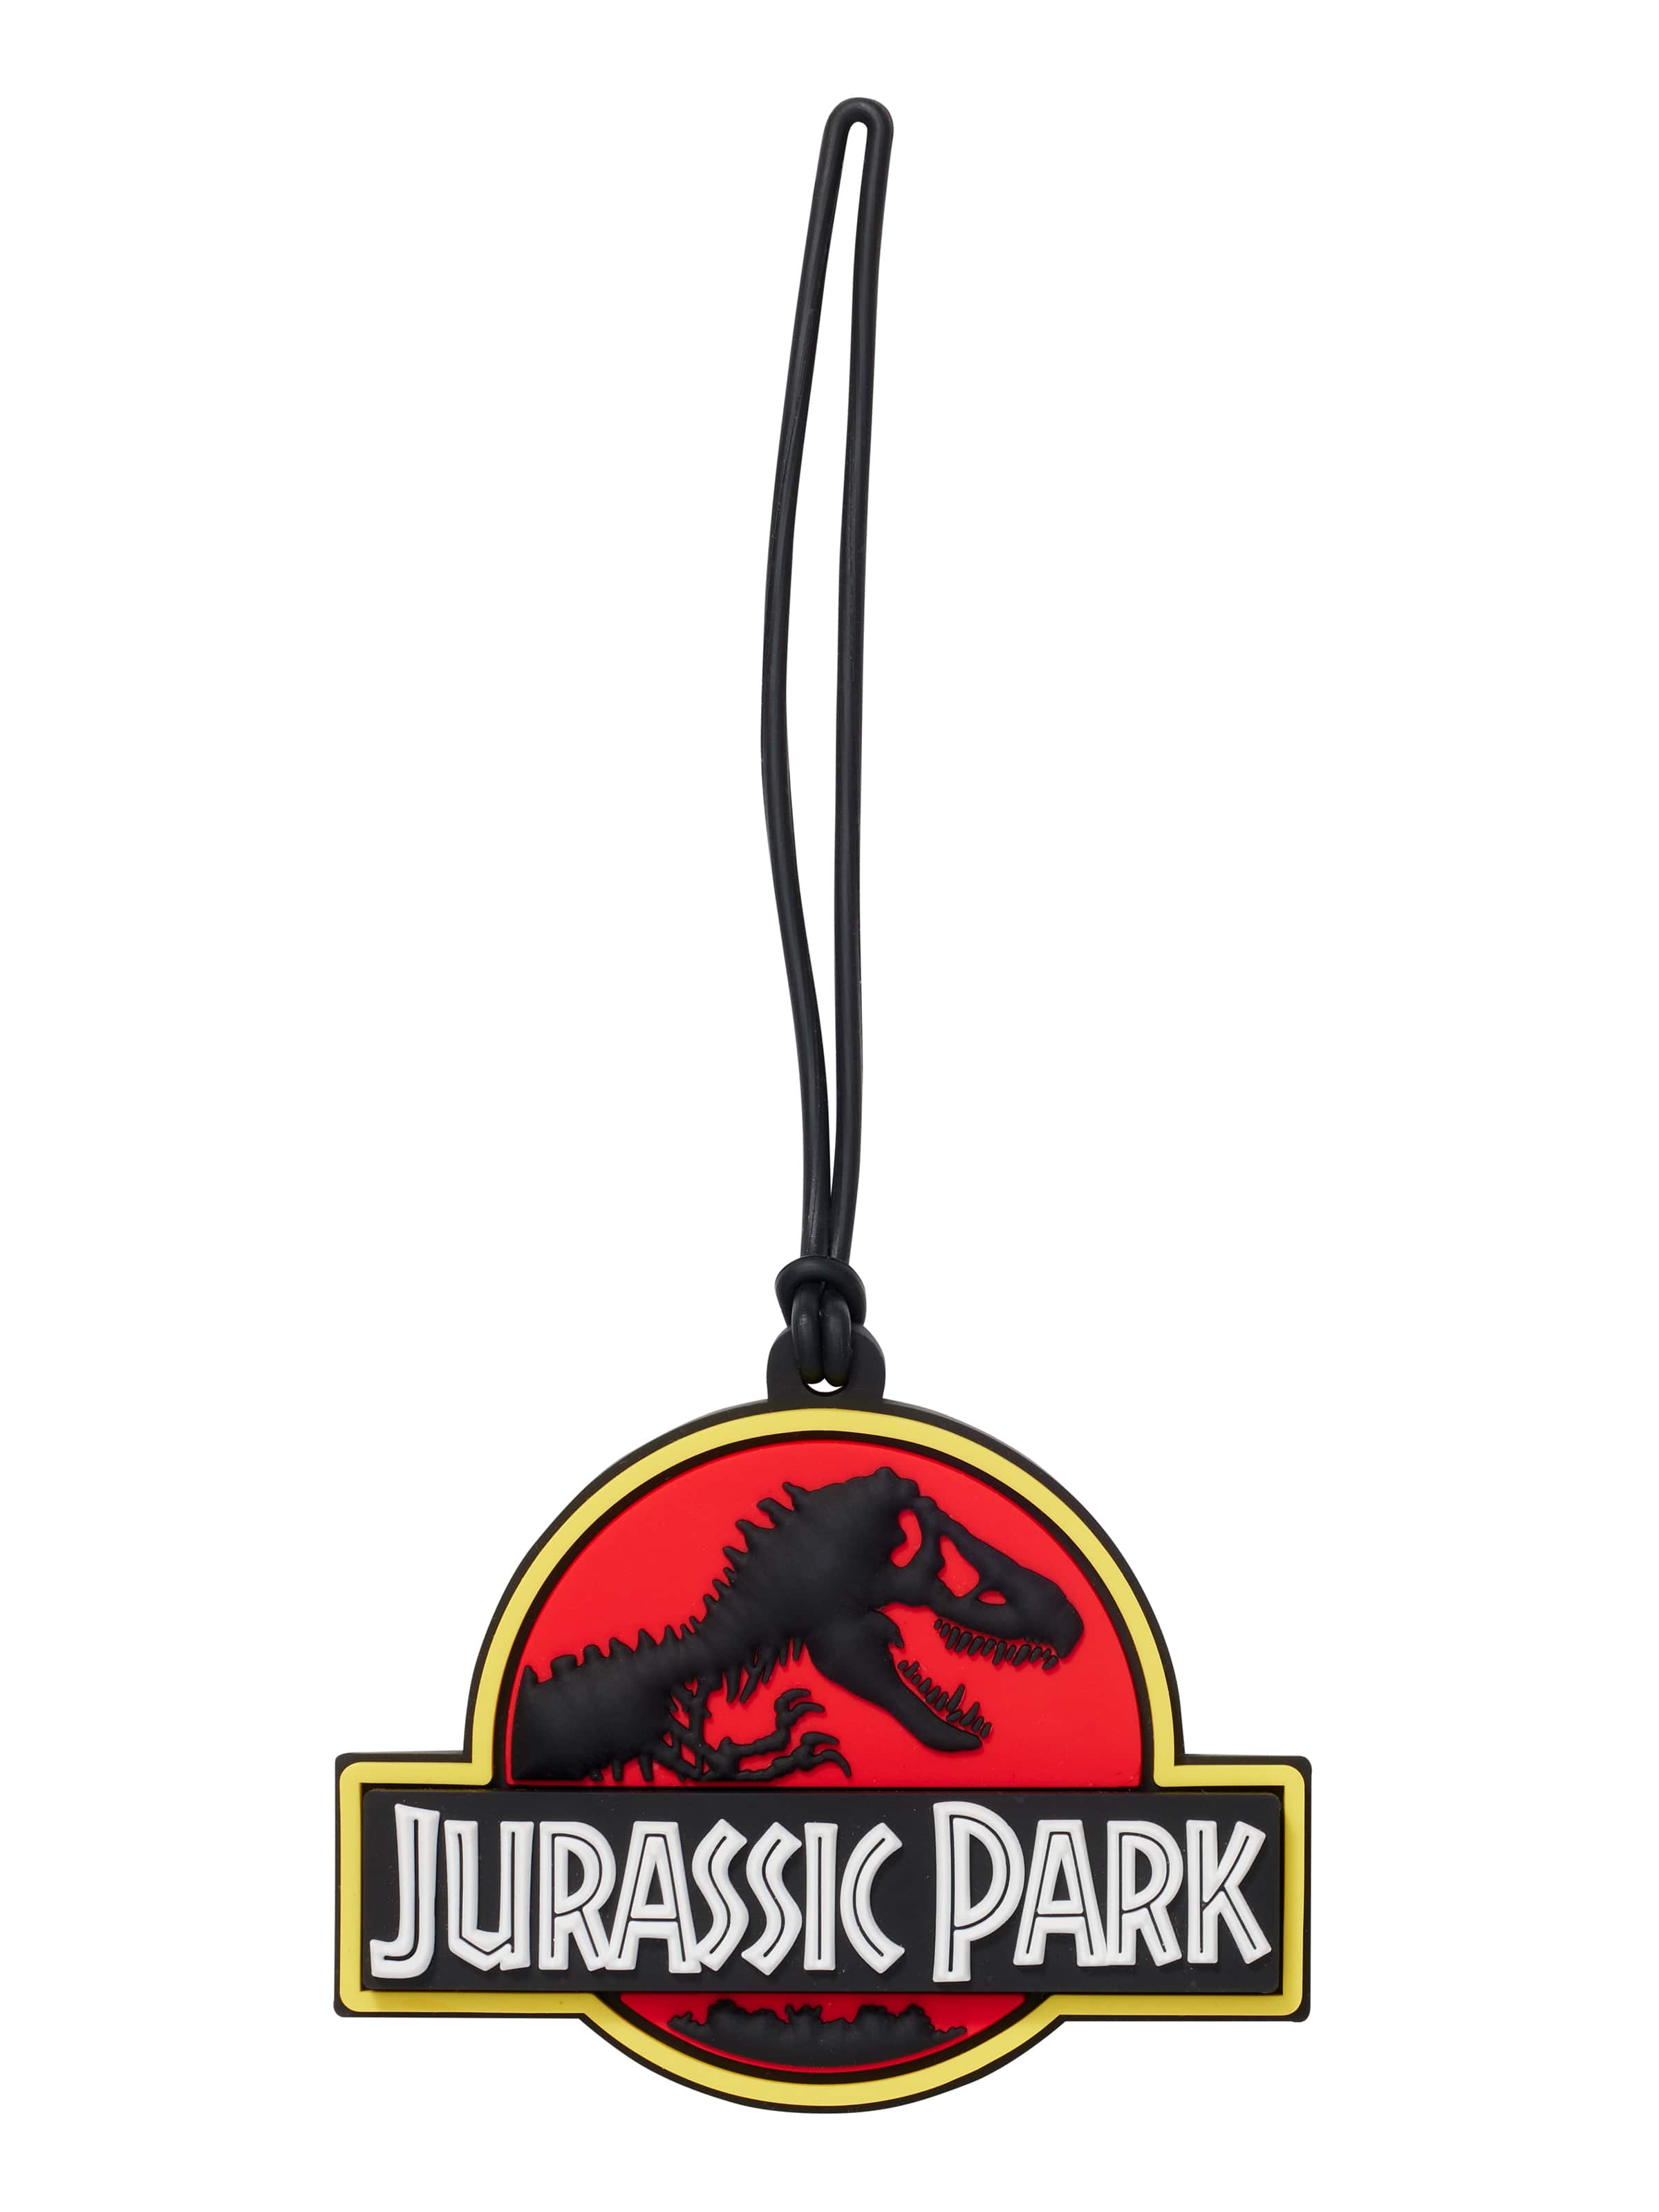 Jurassic Park Bag Tag